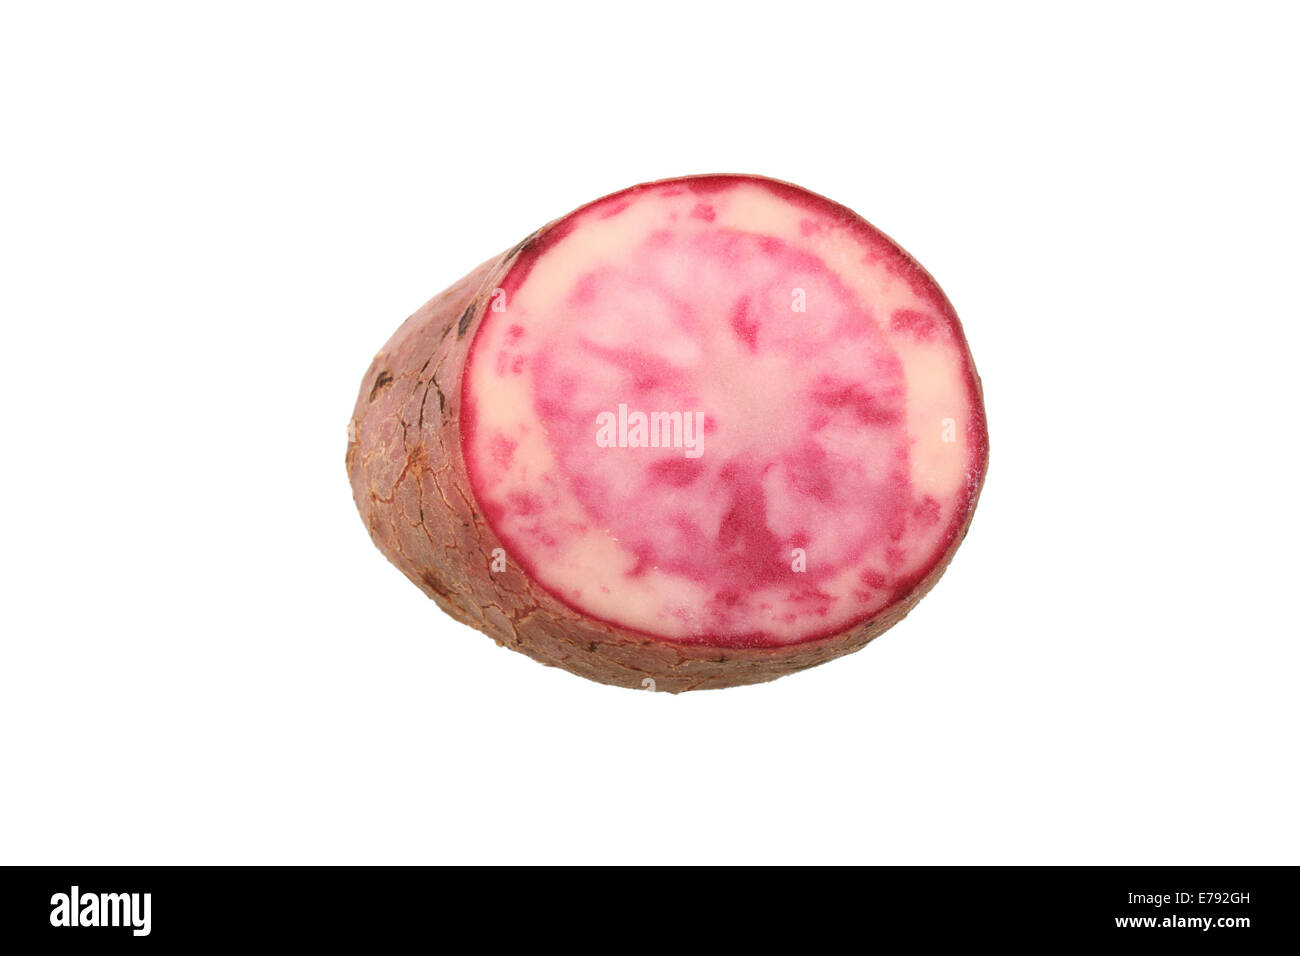 La pomme de terre, la variété rouge bourgogne Highland, coupées en deux Banque D'Images